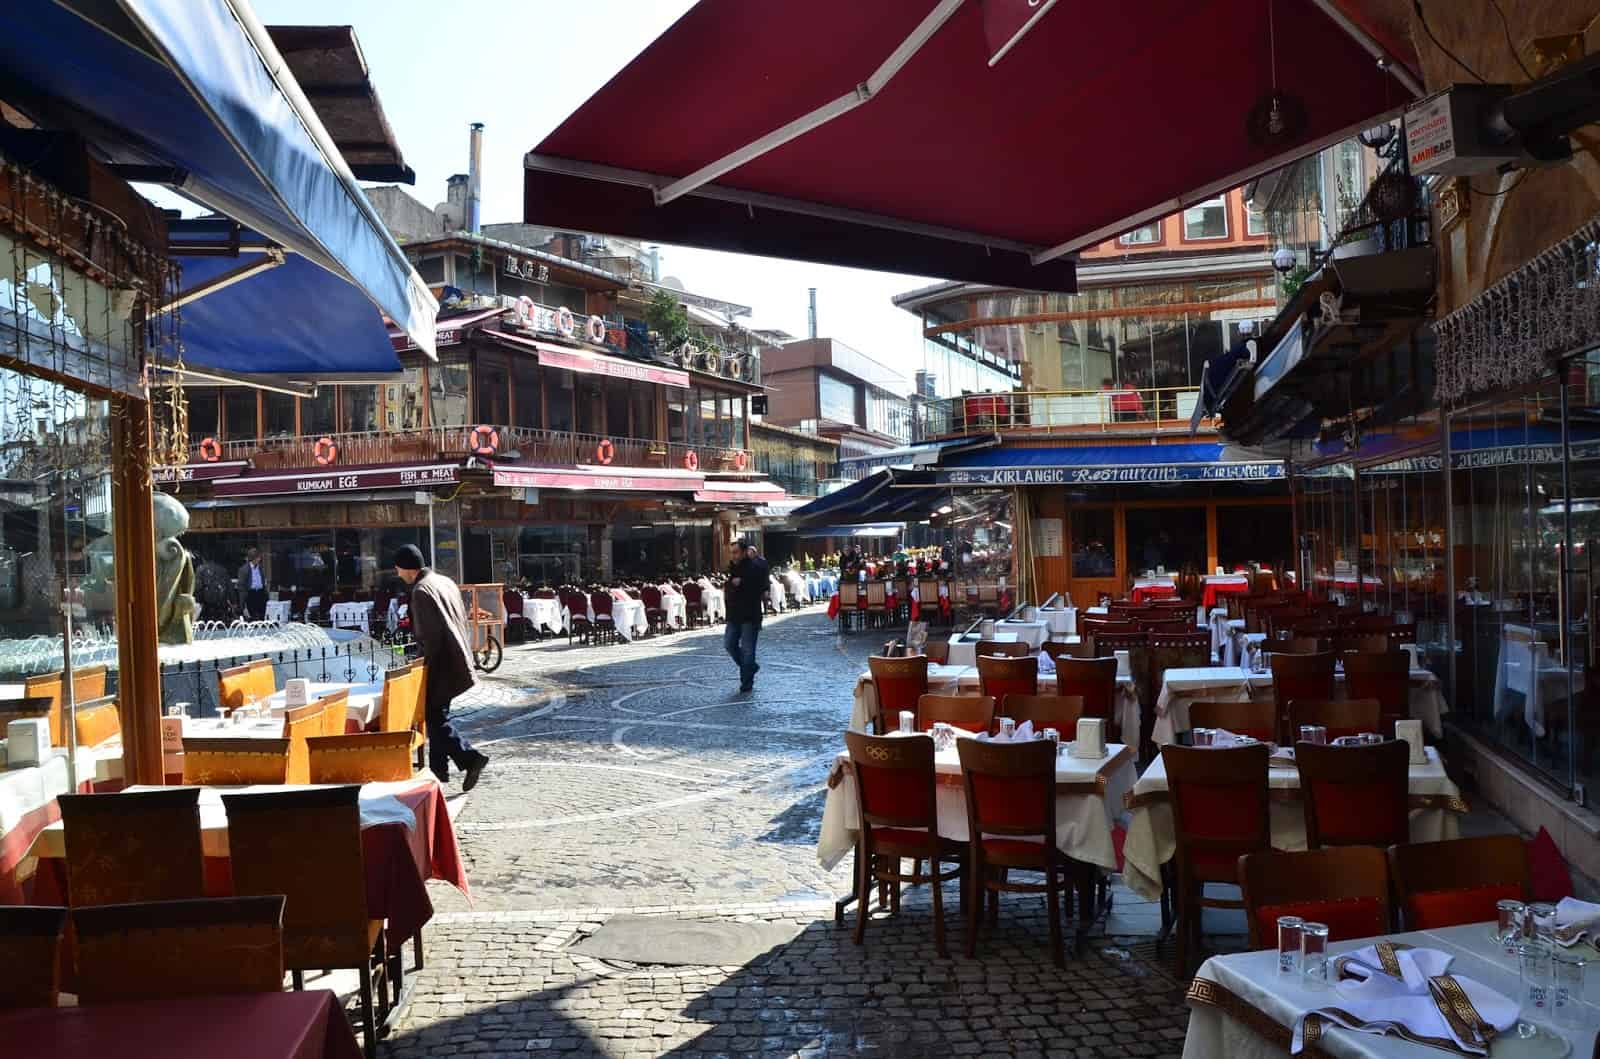 Kumkapı Meydanı in Kumkapı, Fatih, Istanbul, Turkey